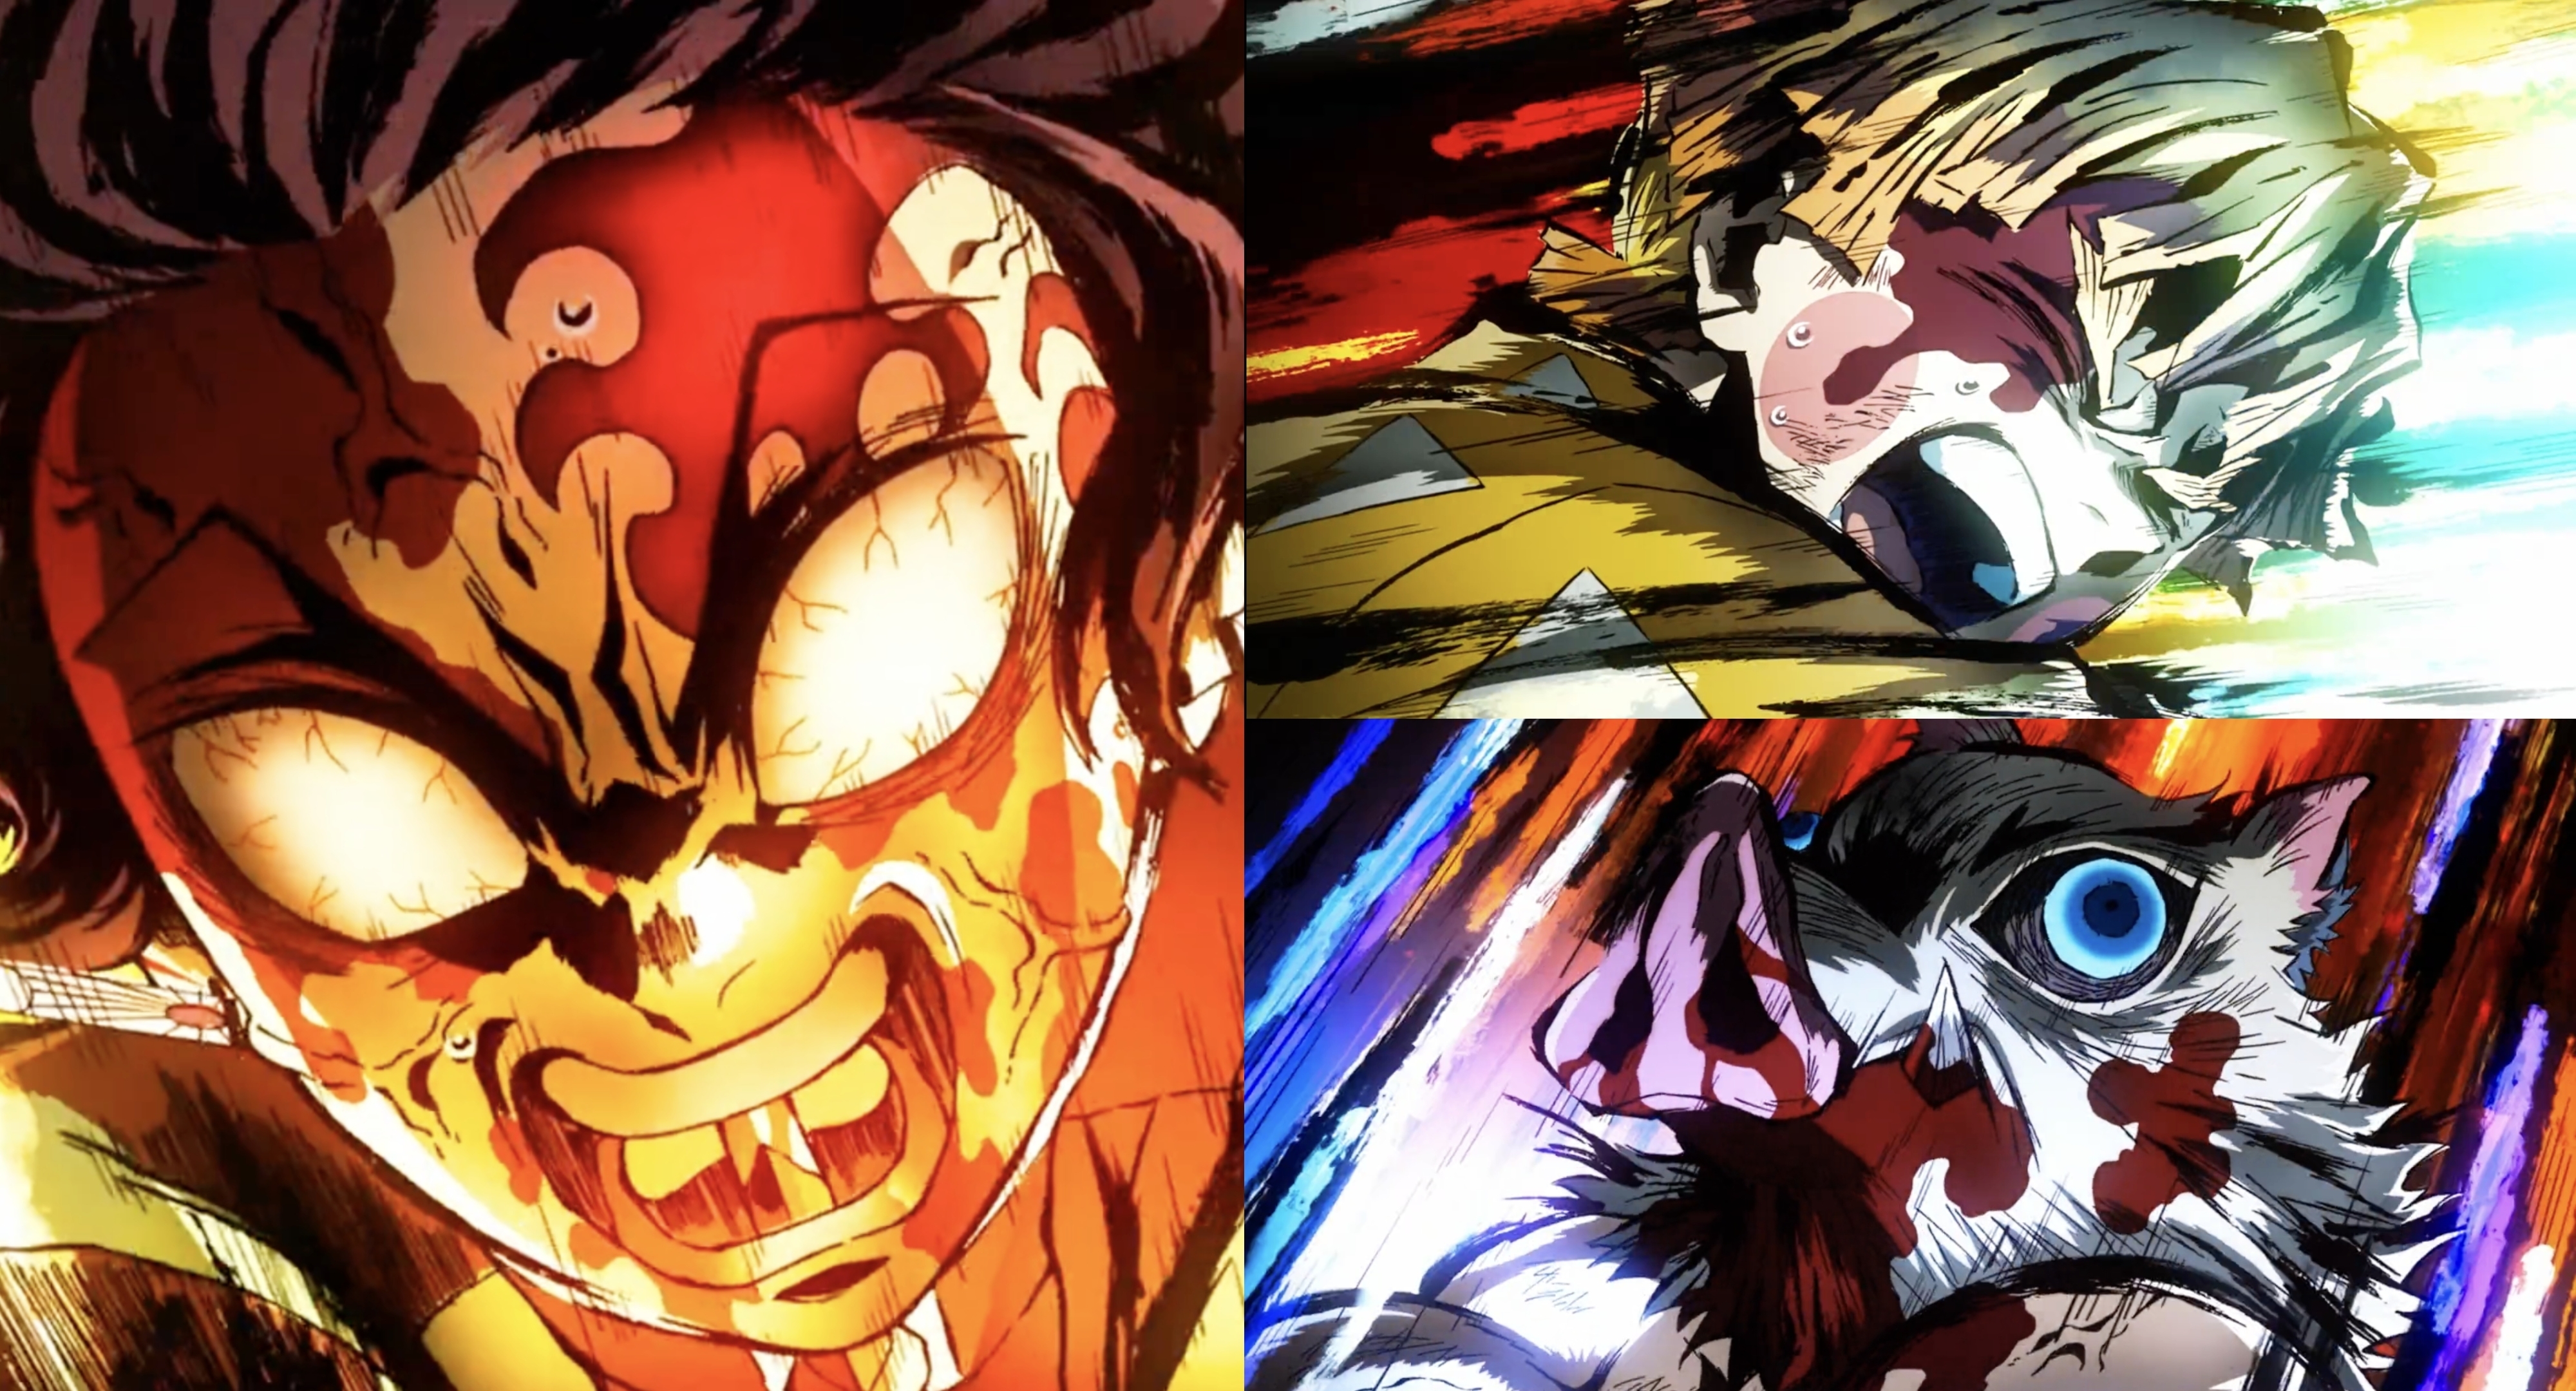 Tanjiro, Zenitsu and Inosuke screaming during the battle against Daki in Season 2